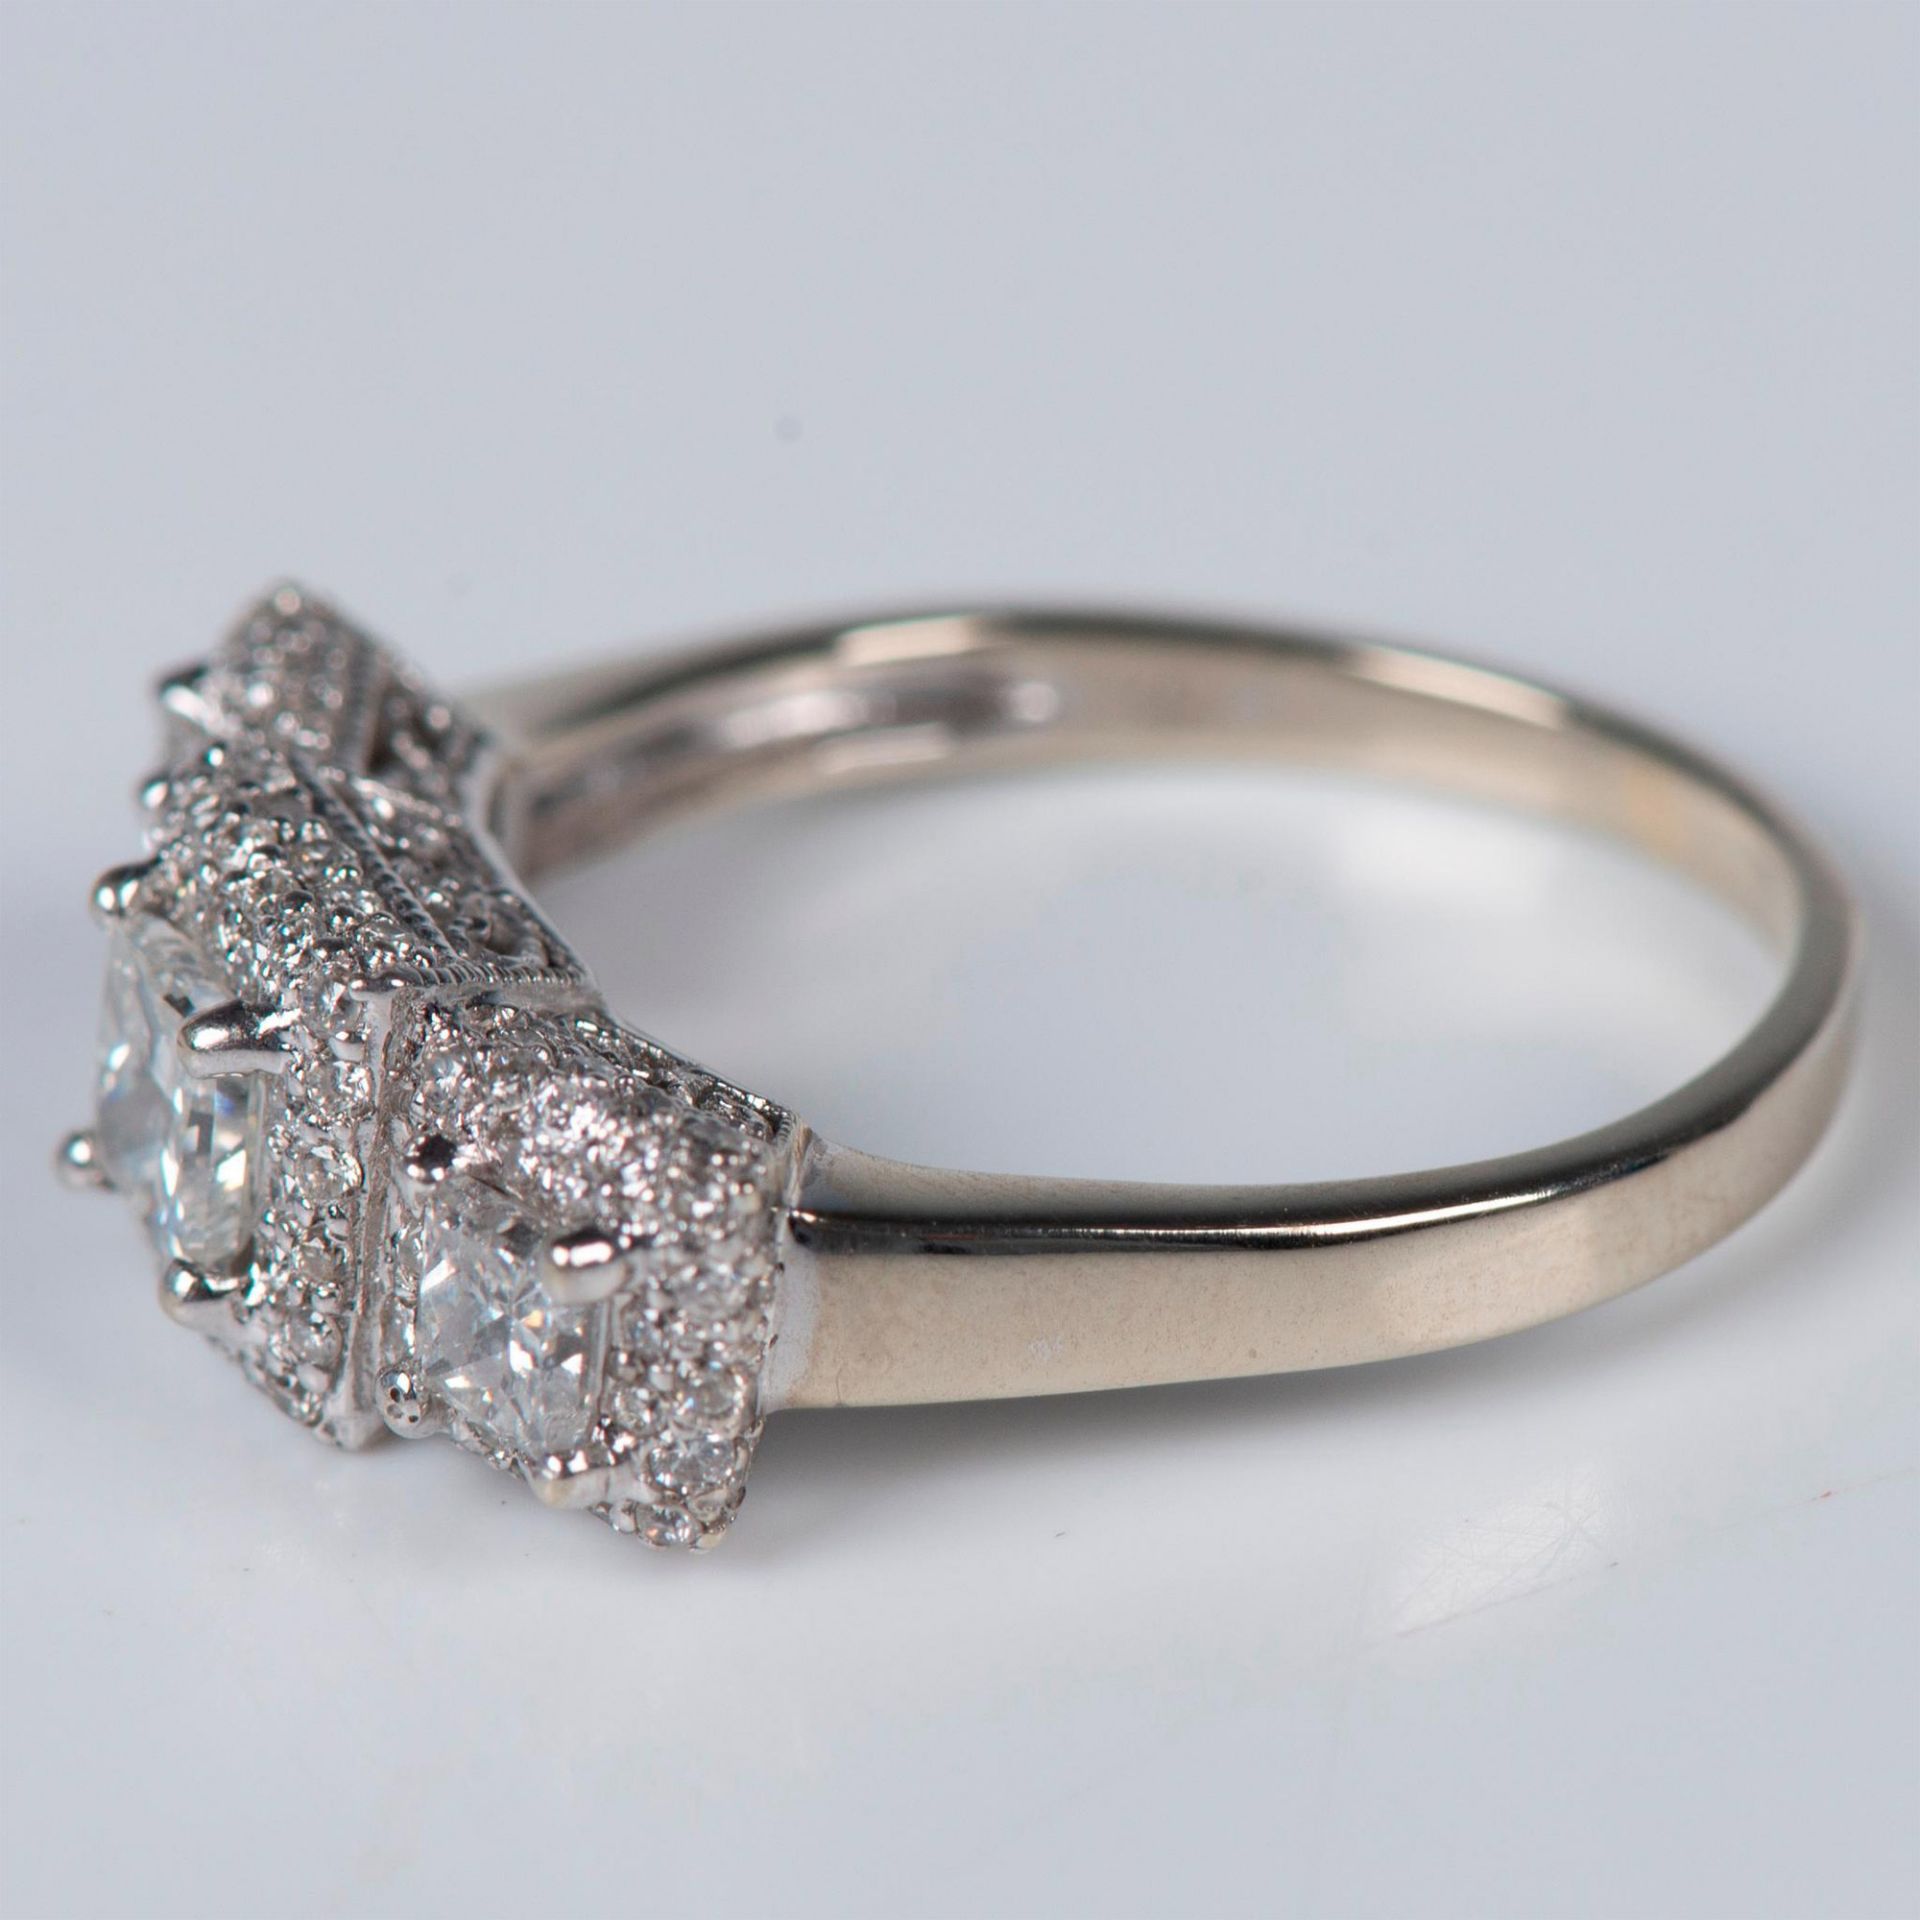 Gorgeous 14K White Gold & 1.5CTW Diamond Ring - Image 2 of 7